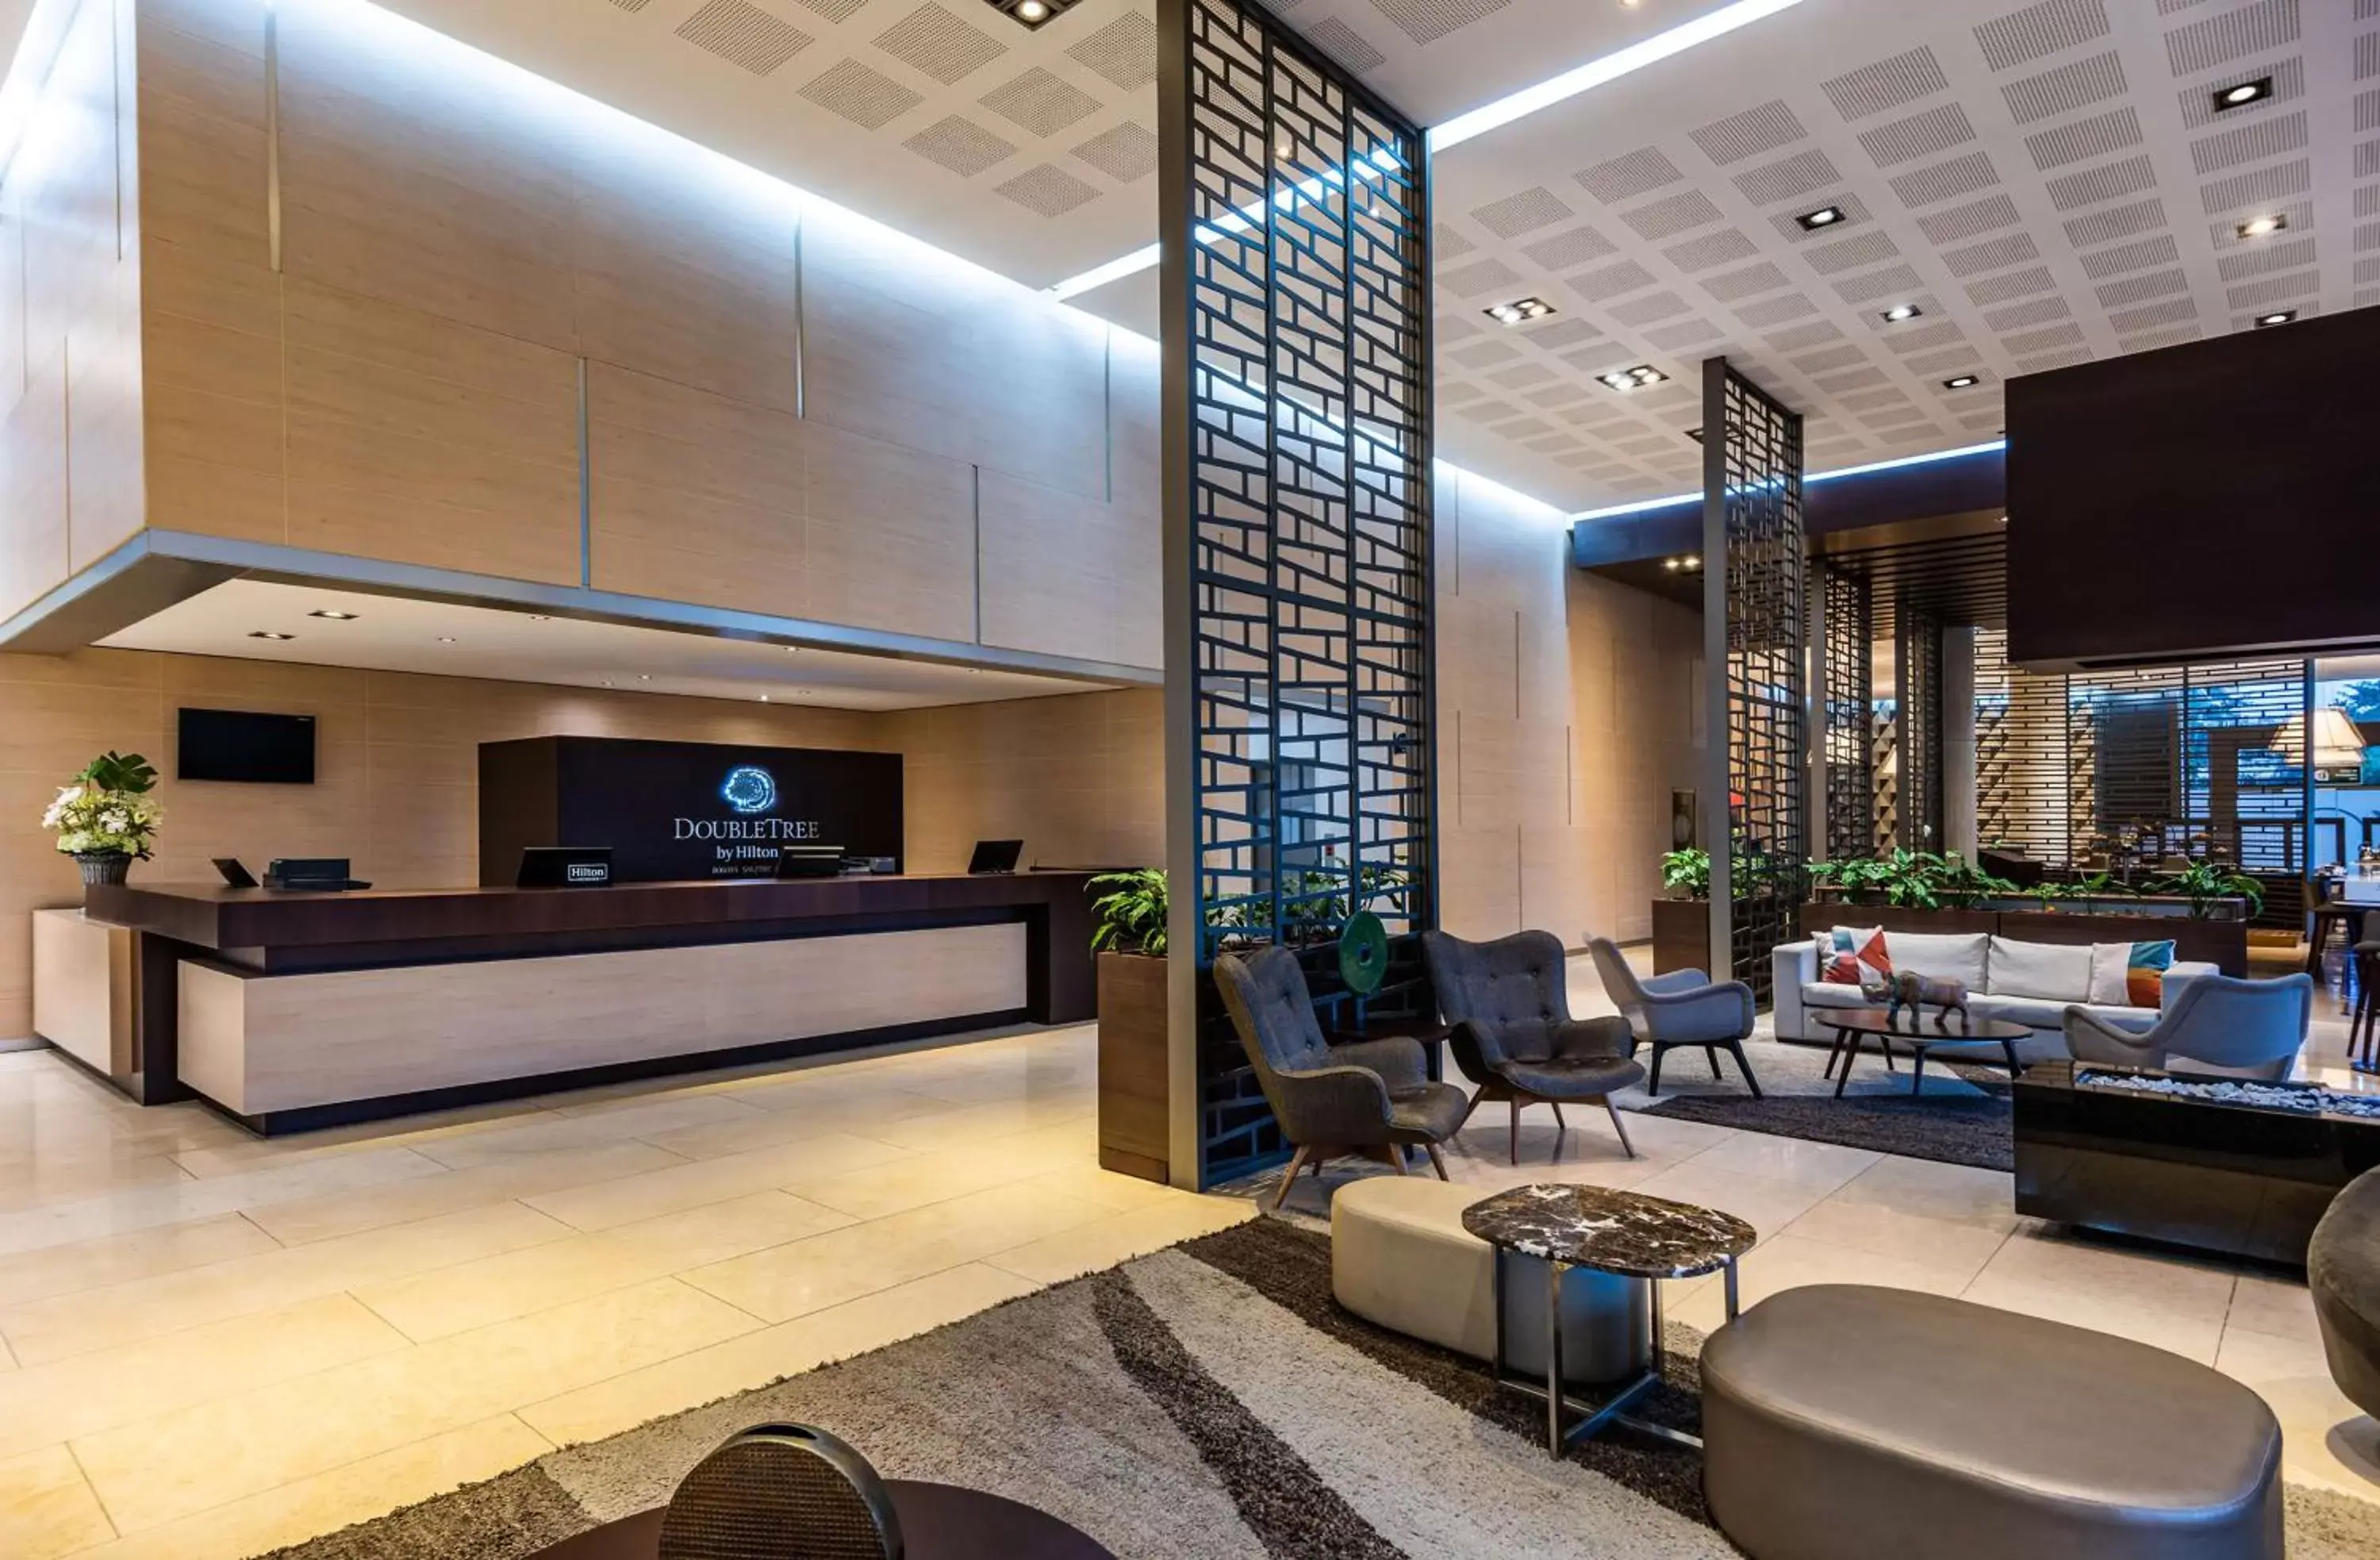 Lobby or reception, Lobby/Reception in Hilton DoubleTree Bogotá Salitre AR